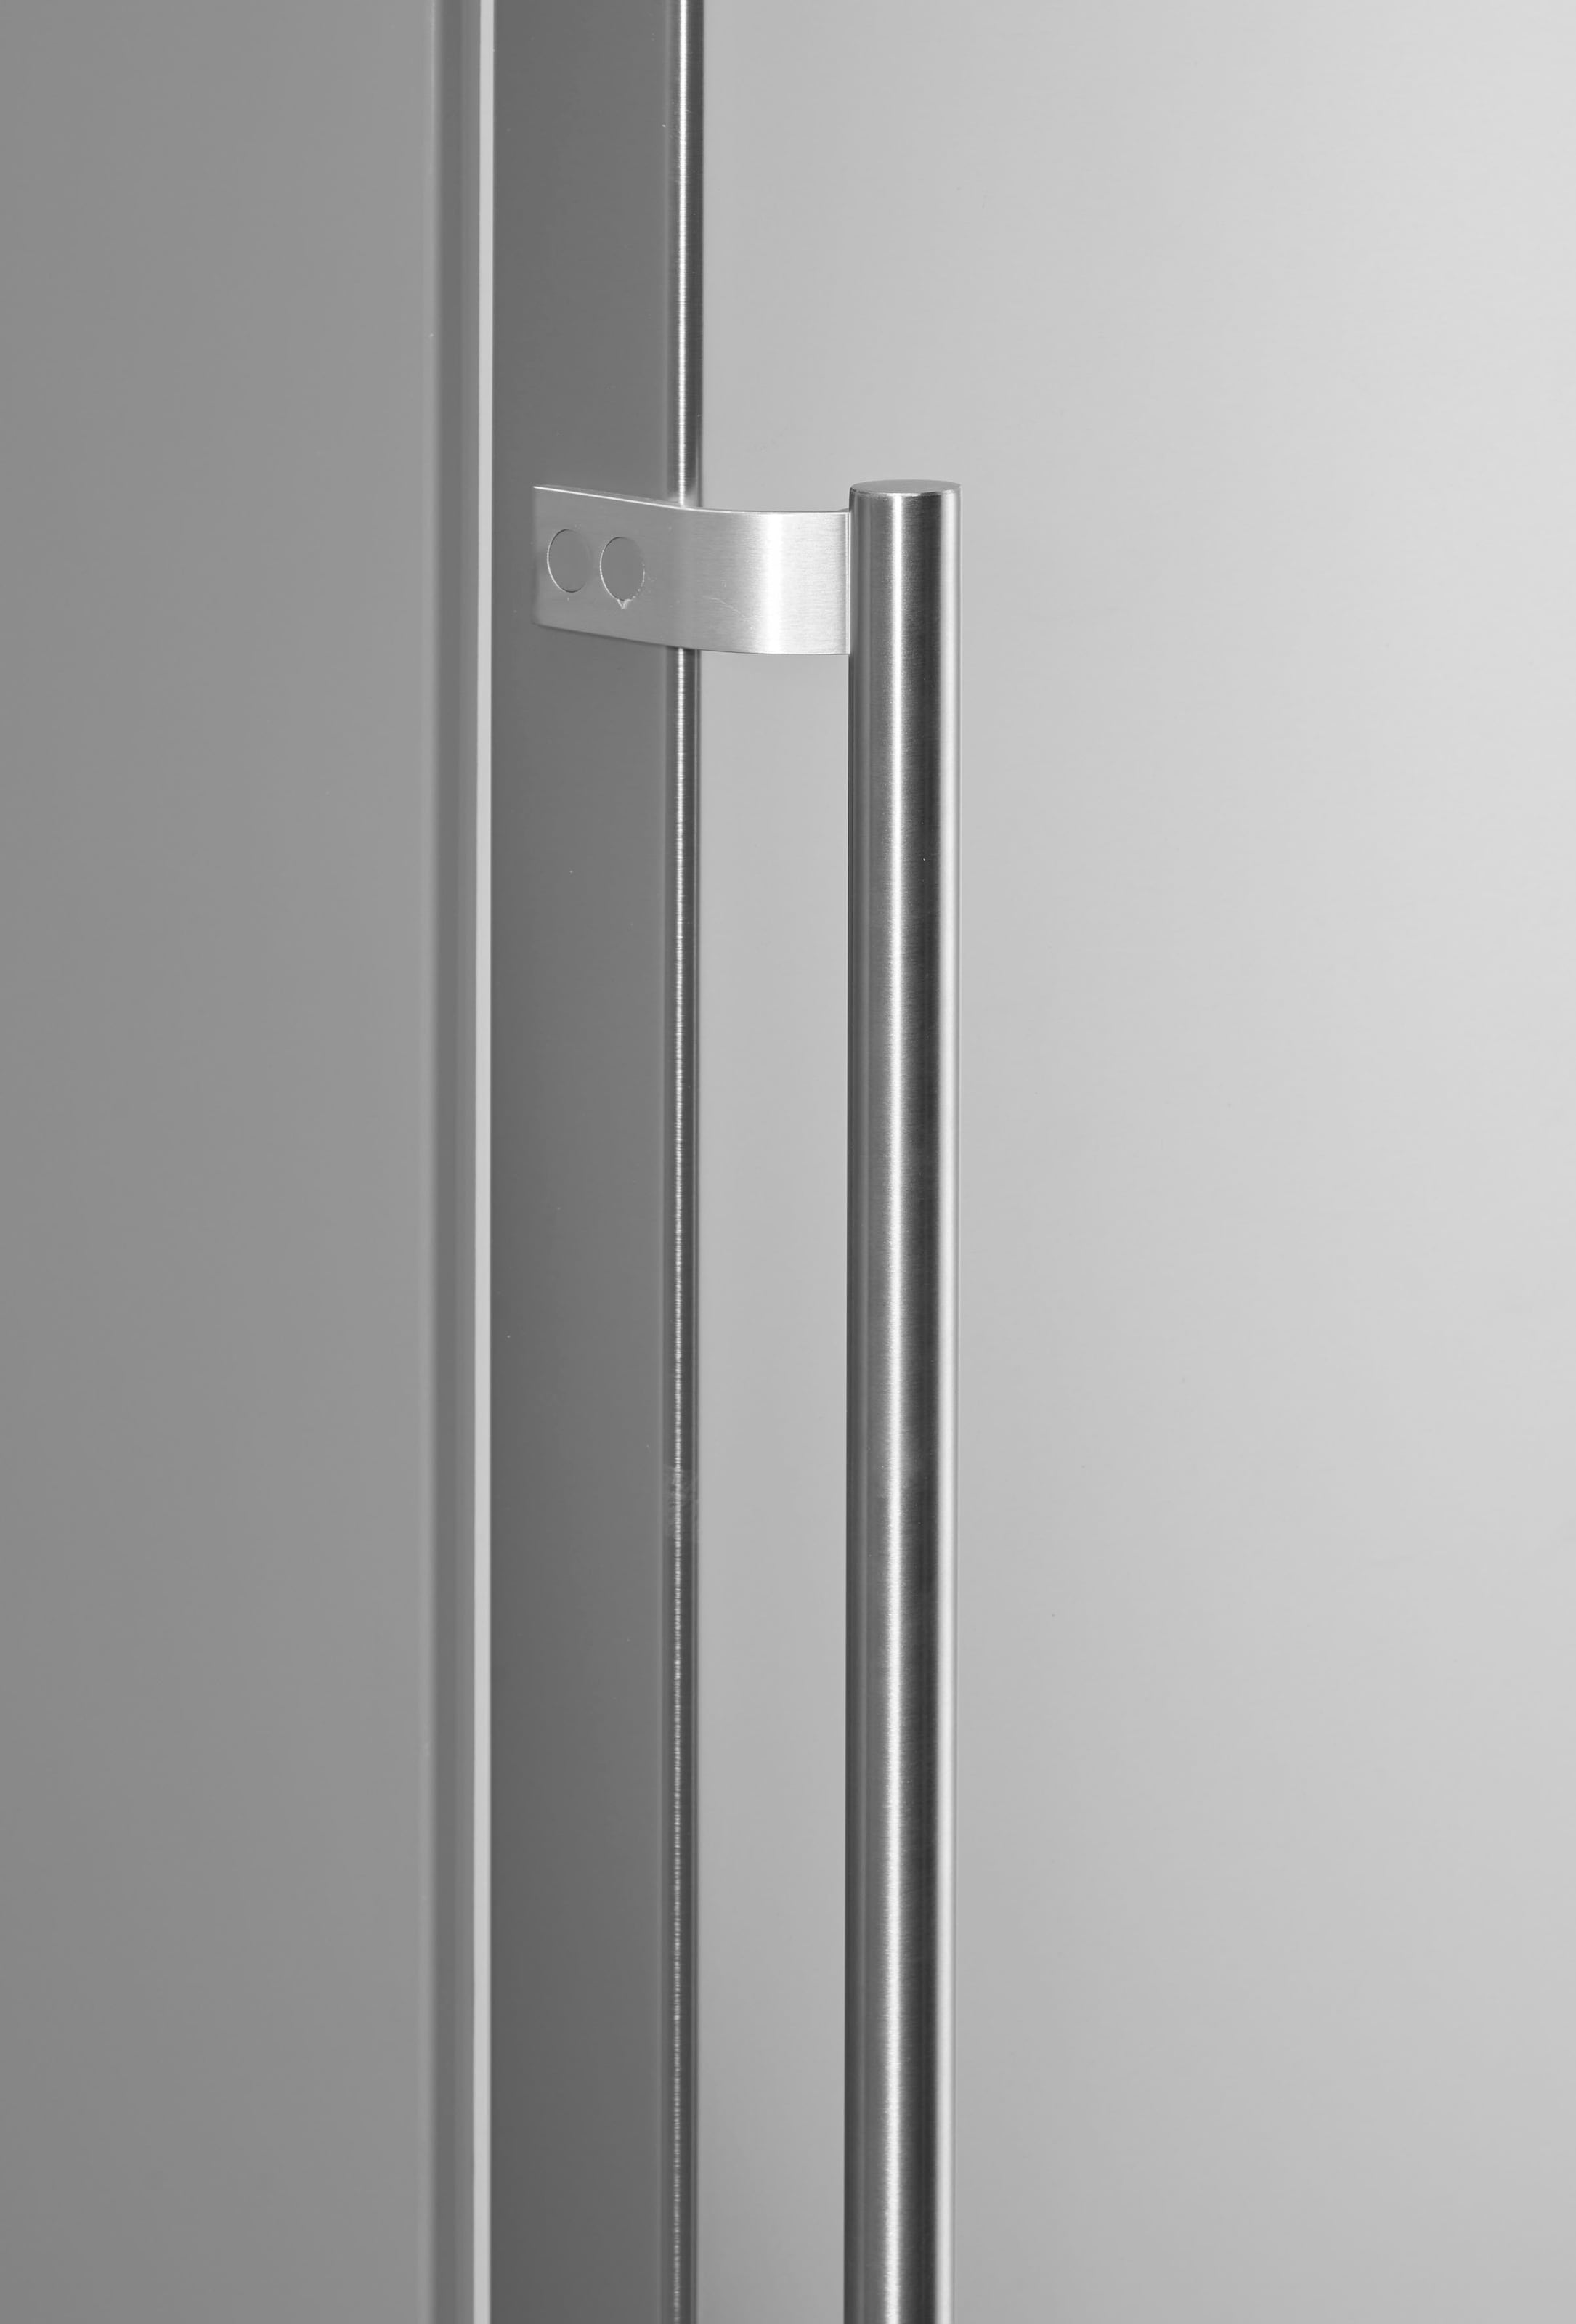 Amica Vollraumkühlschrank, VKS 358 100 E, 185,5 cm hoch, 59,5 cm breit mit  3 Jahren XXL Garantie